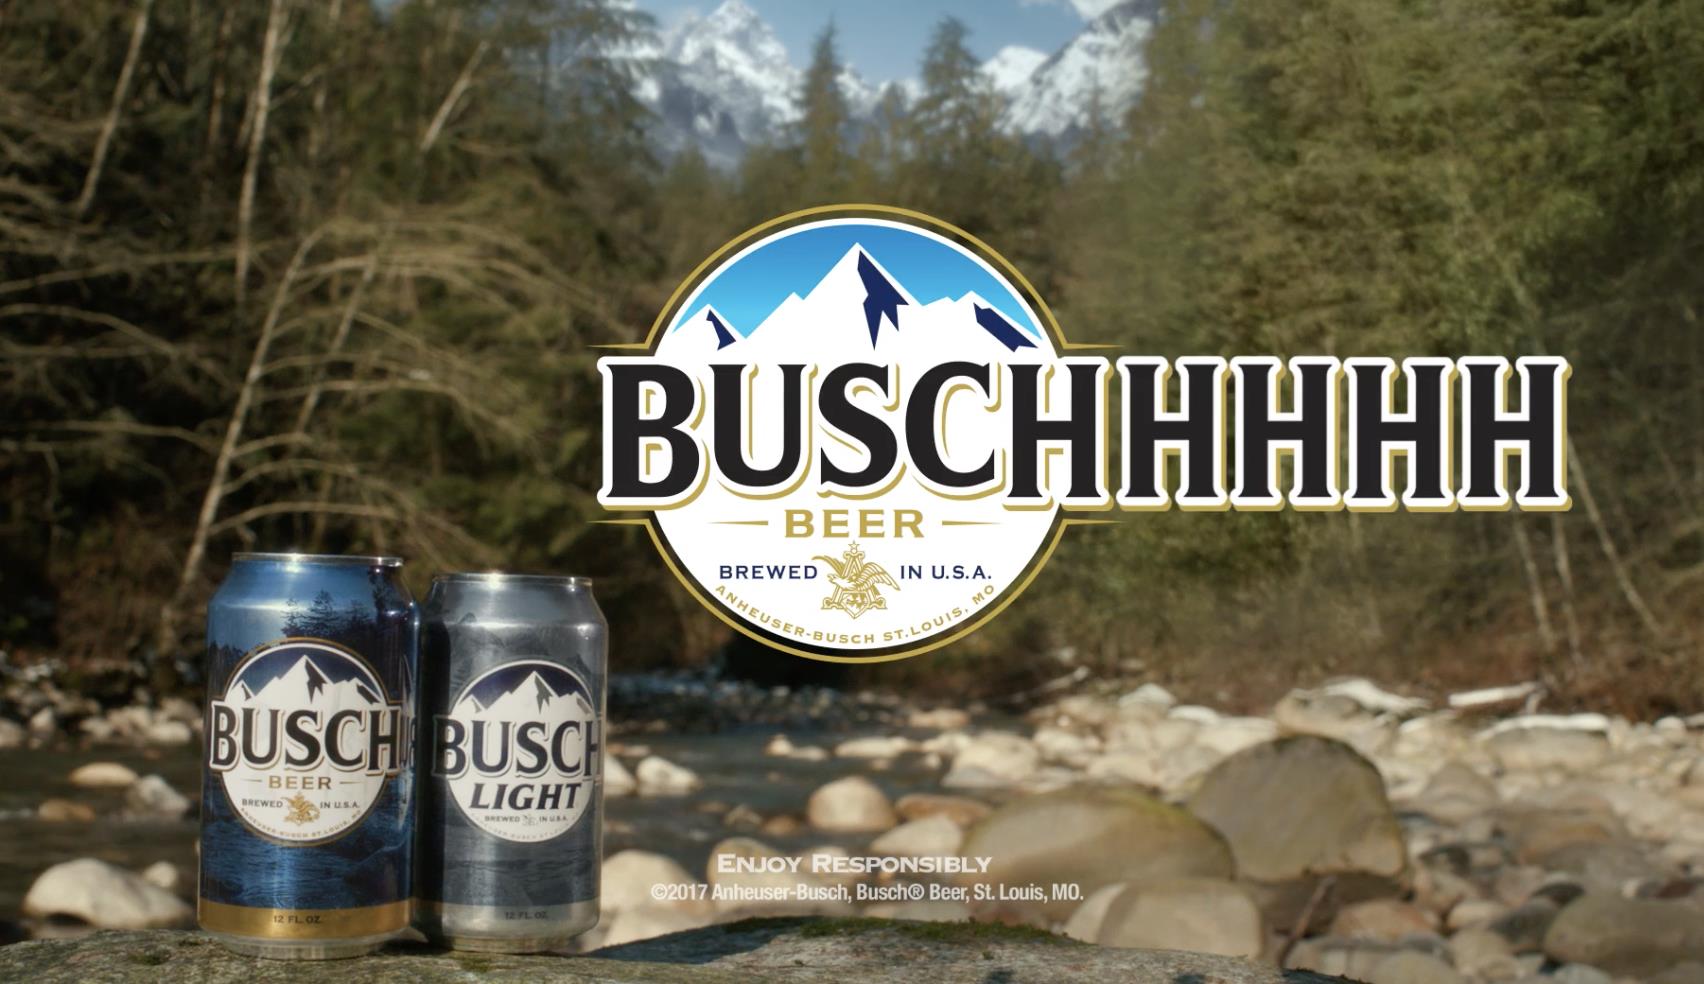 Busch: "Buschhhhhh"